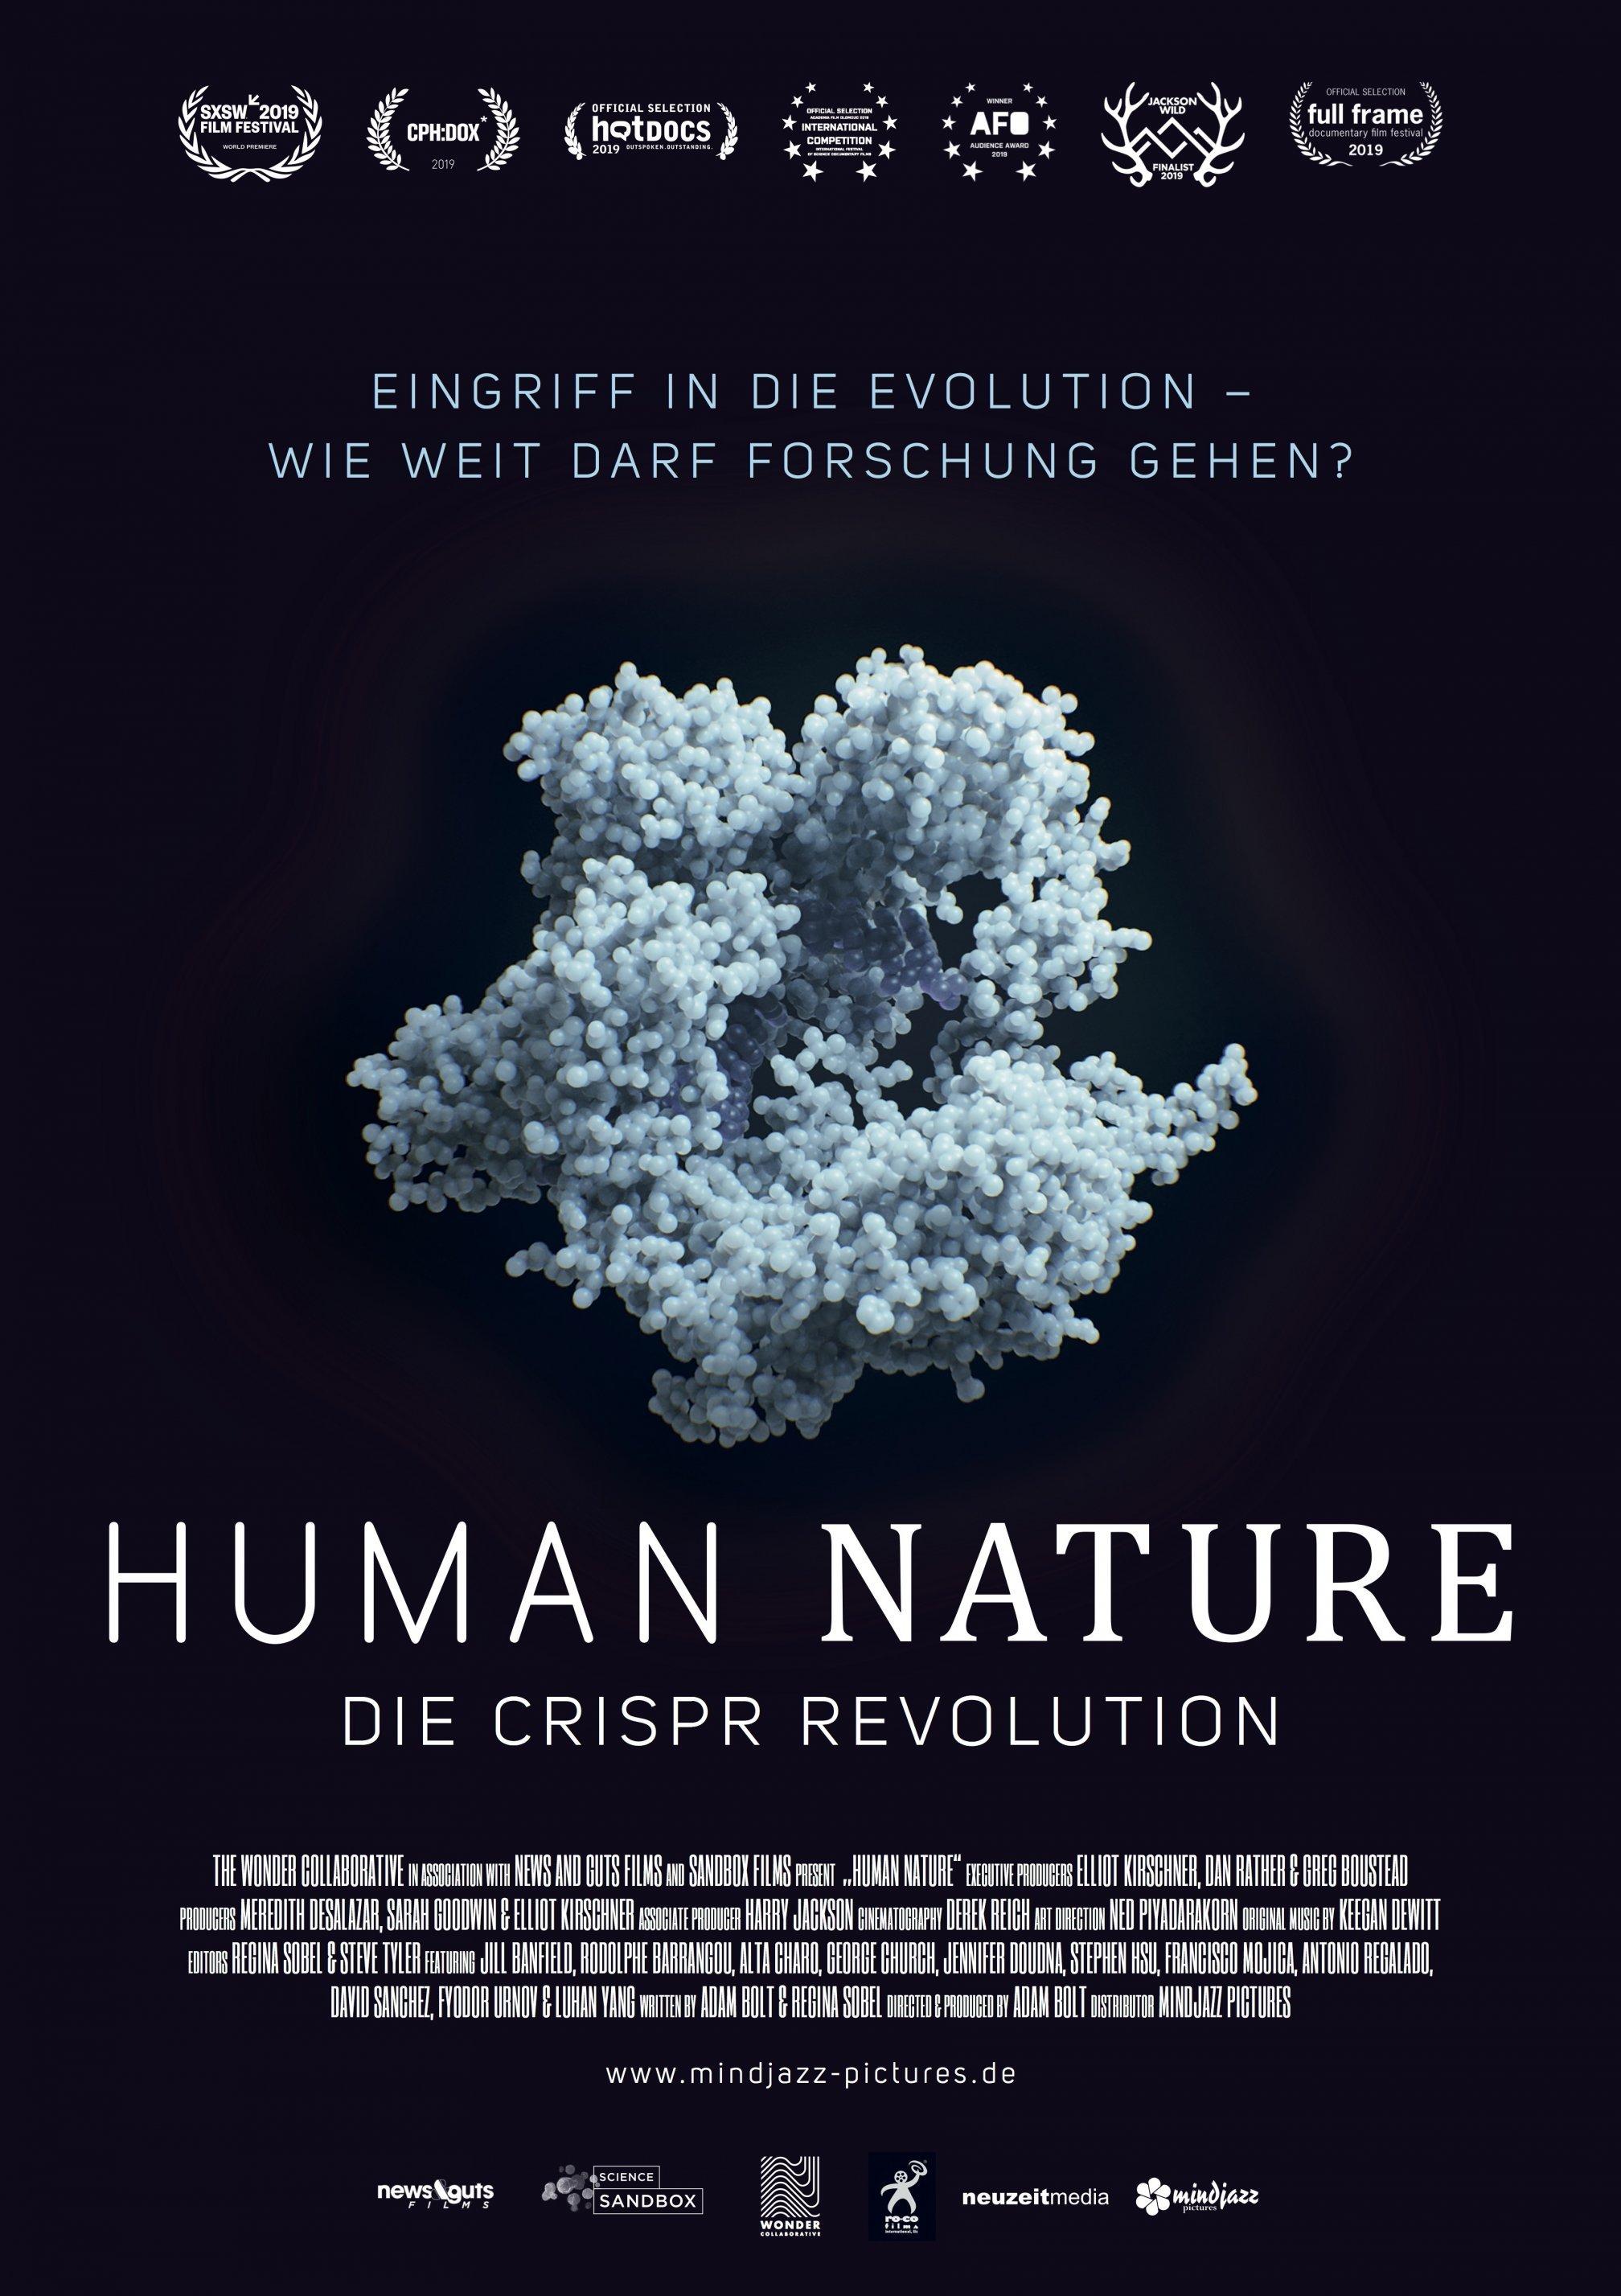 Filmplakat mit einem Bild des Biomoleküls Crispr-Cas. Es kündigt die Dokumentation „Human Nature“ an.